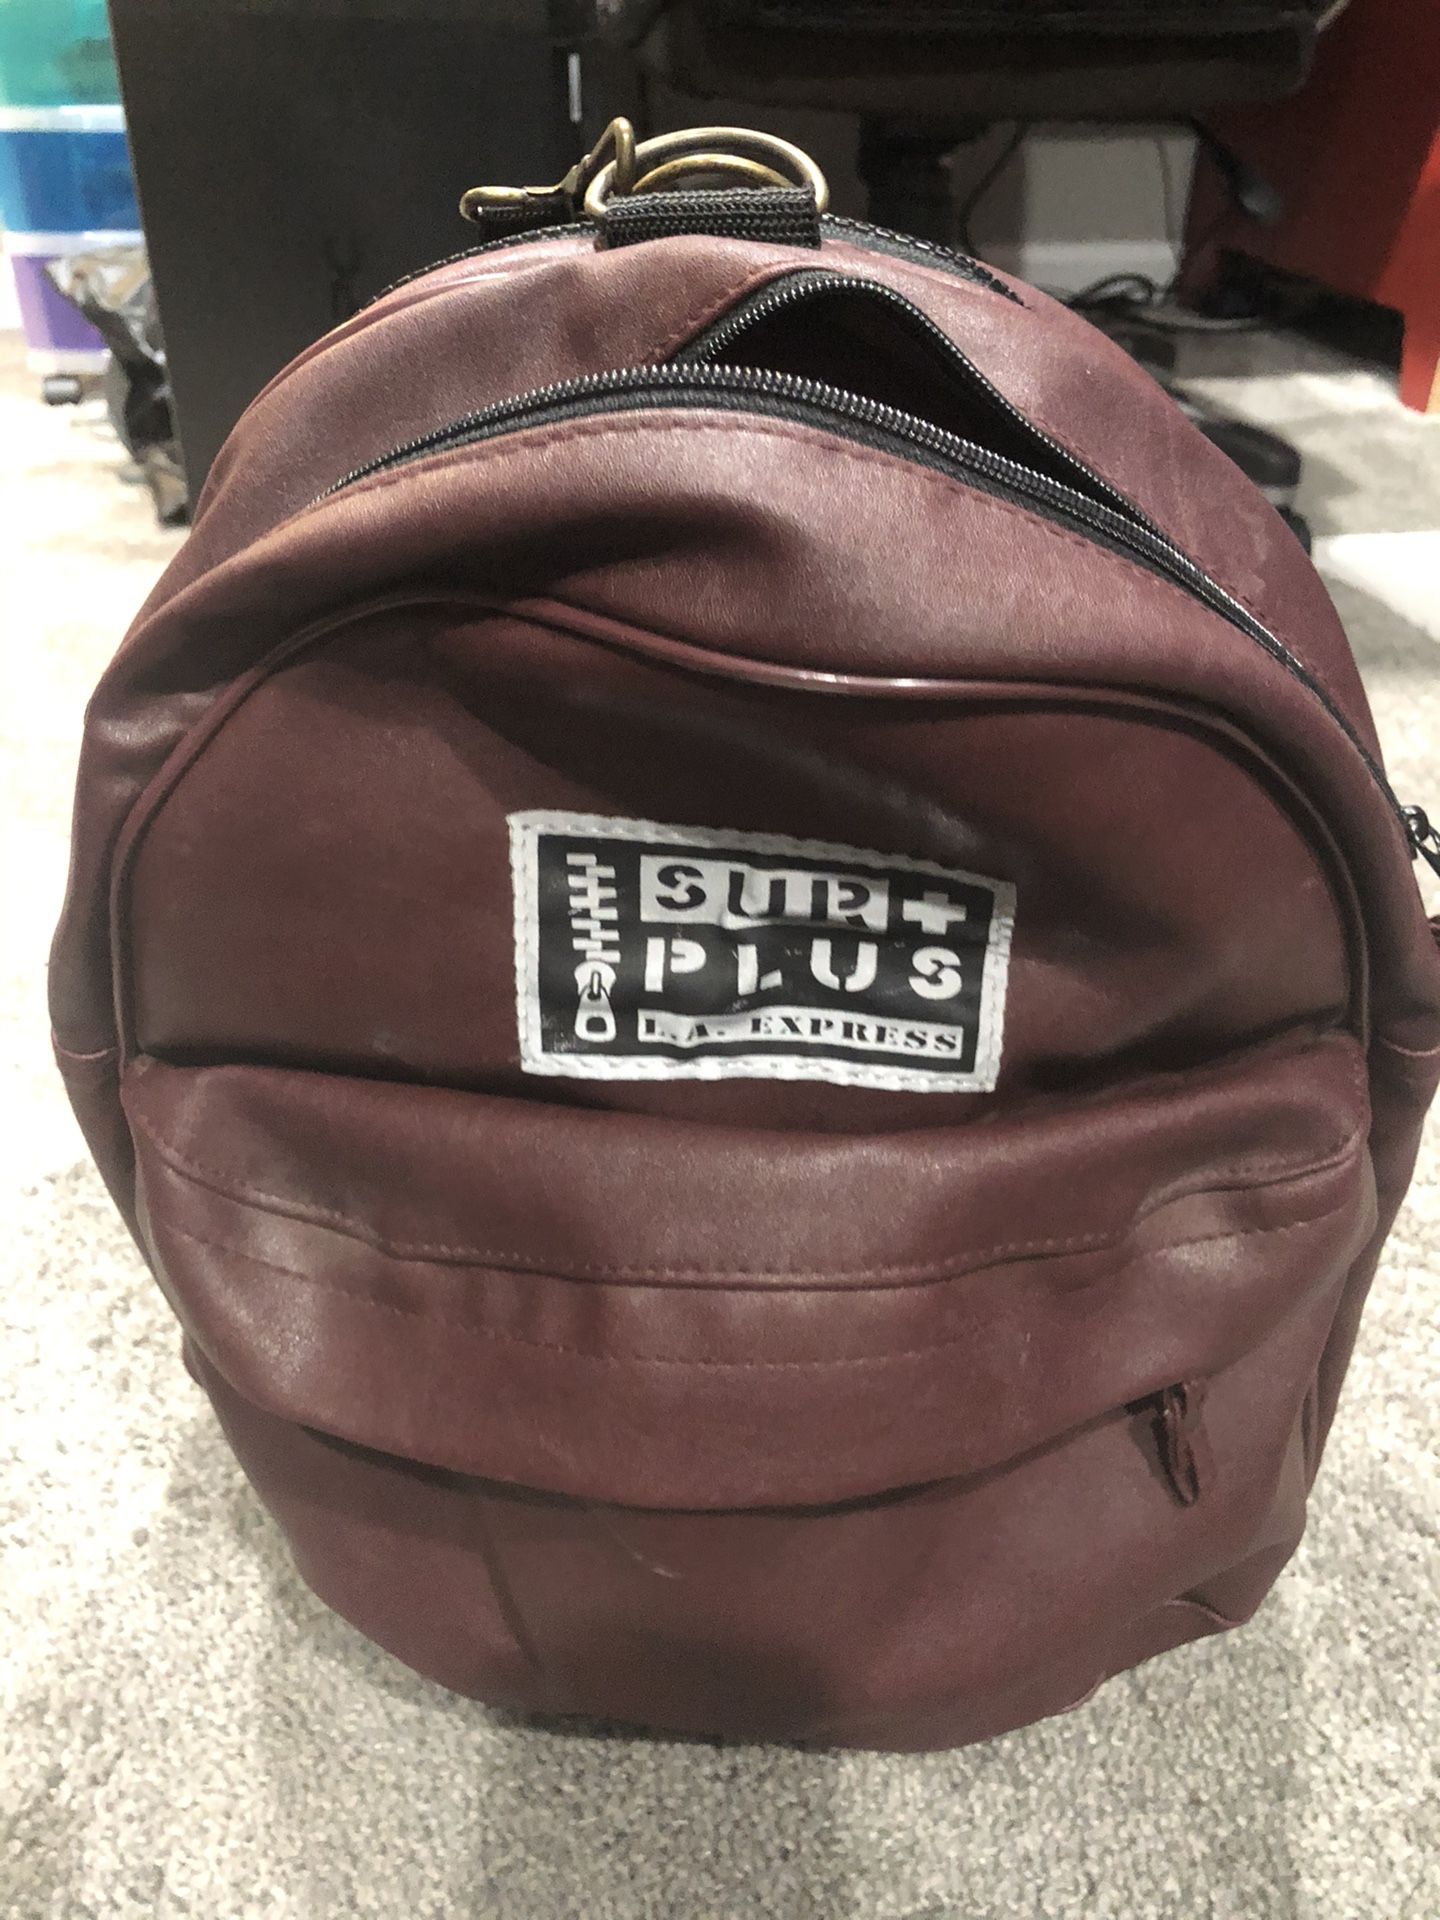 Backpack/Duffle bag